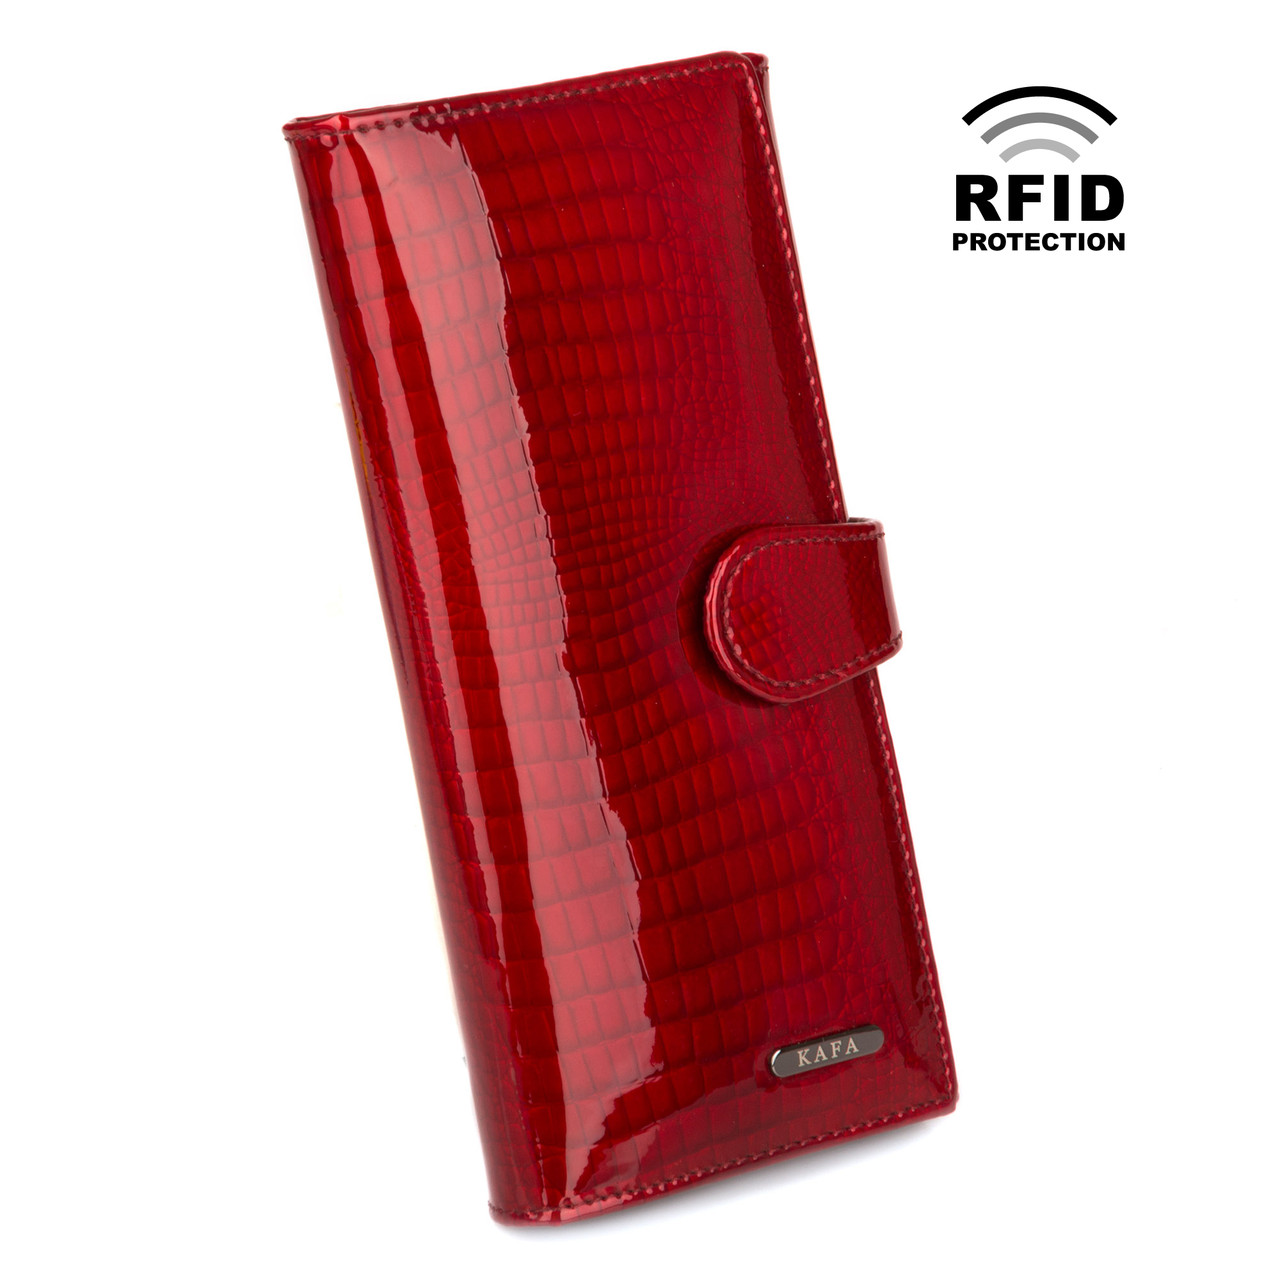 Червоний жіночий гаманець шкіряний лаковий Kafa з rfid-блокуванням